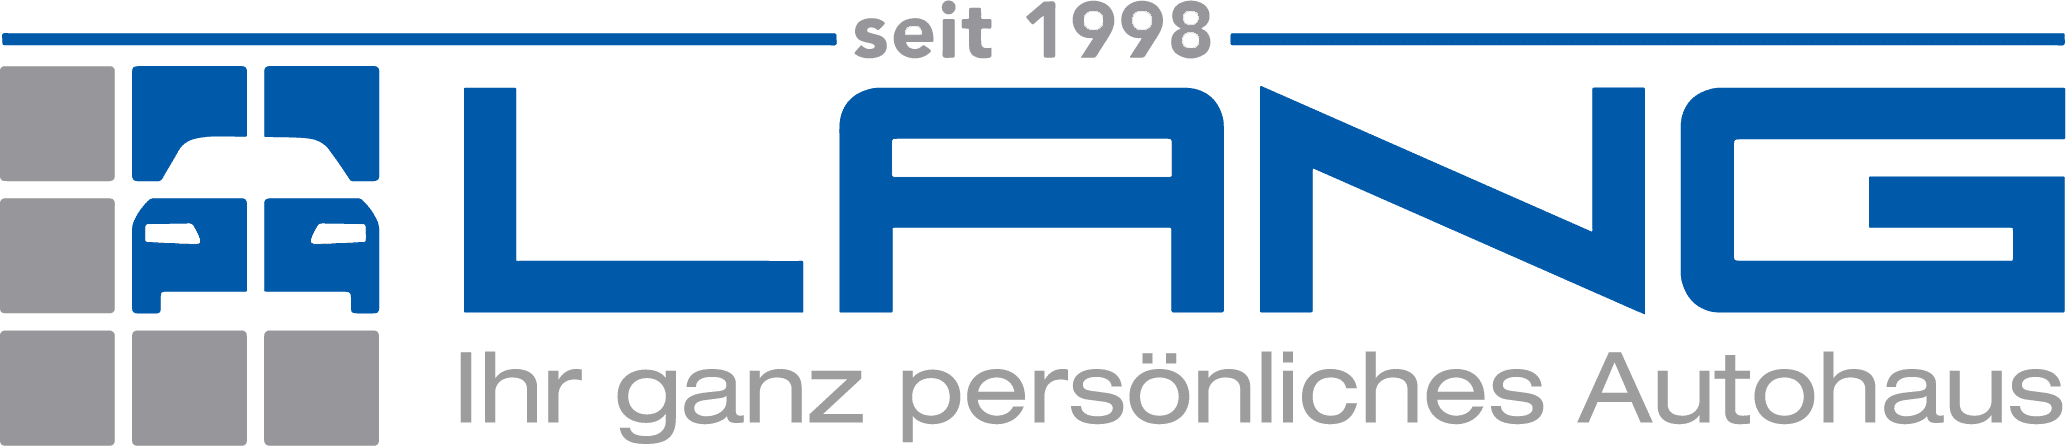 Logo seit 1998 mit Untertitel "Ihr ganz persönliches Autohaus"